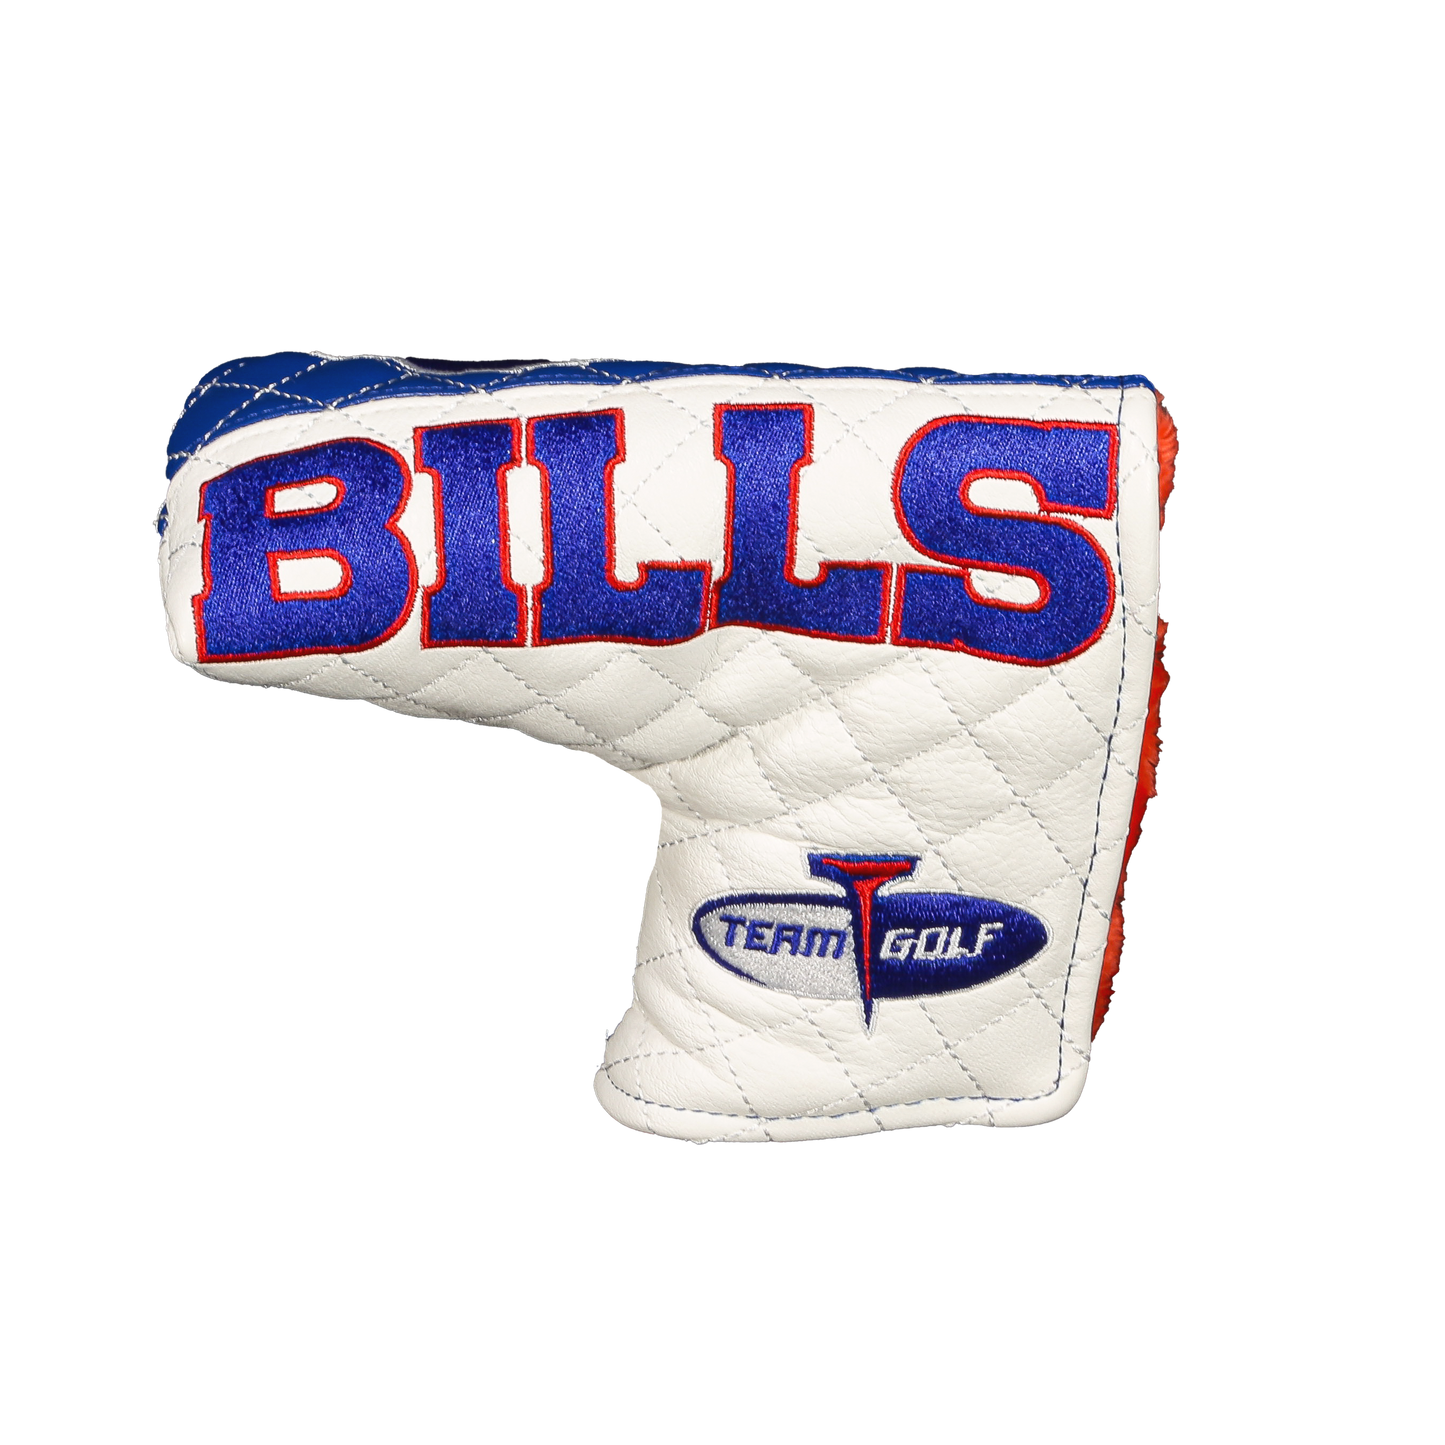 Buffalo "Bills" Blade Putter Cover